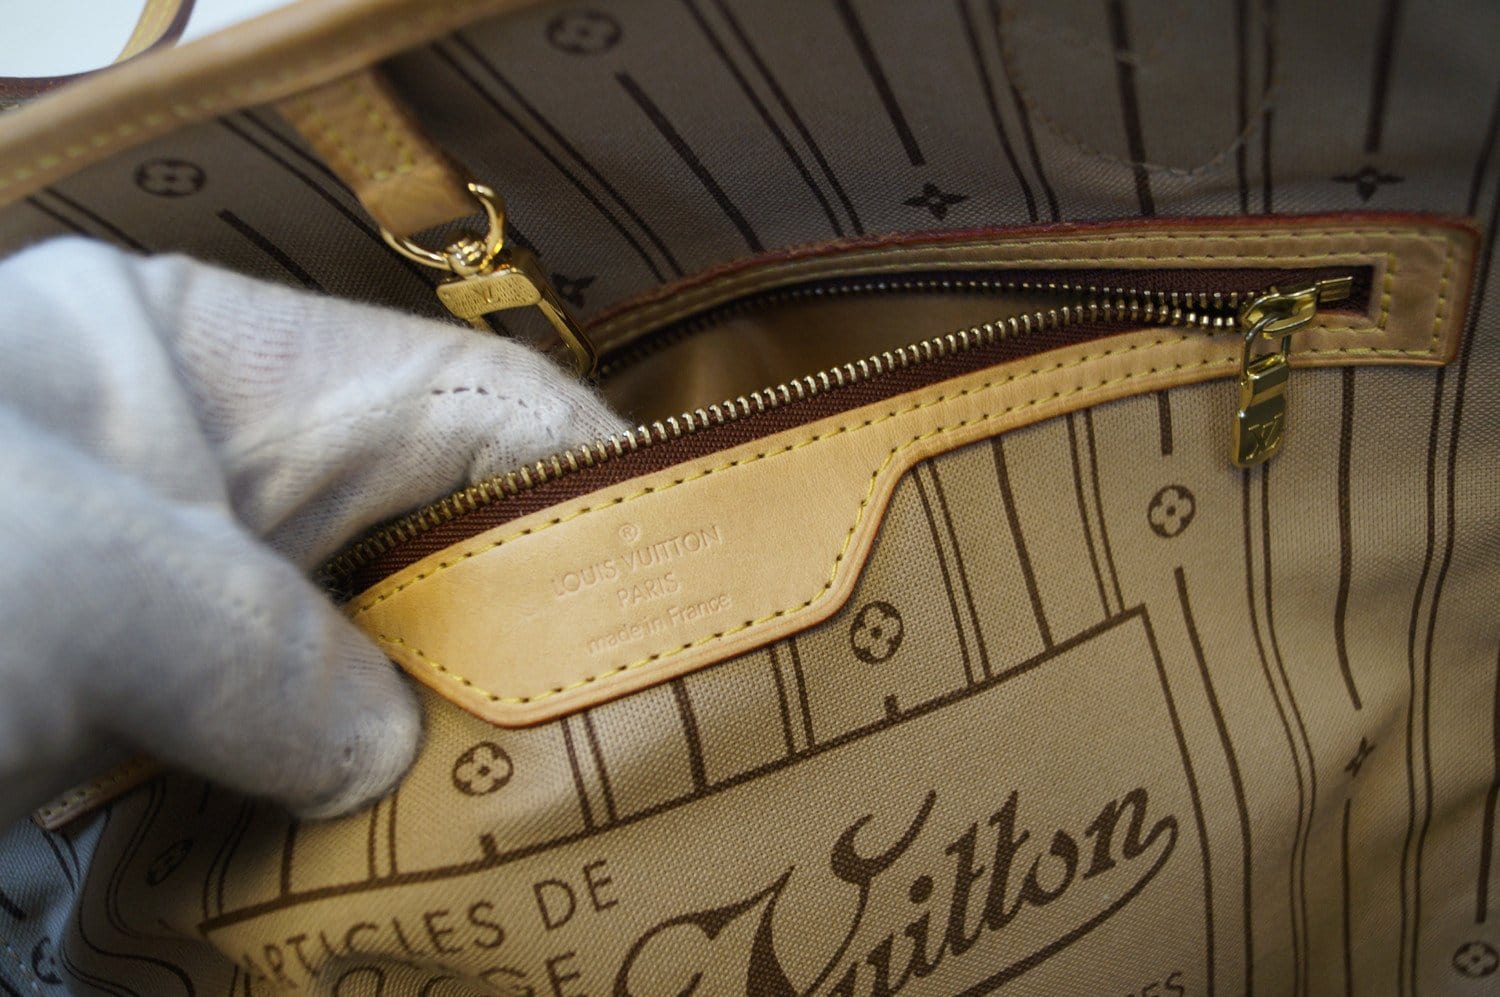 Louis Vuitton Monogram Articles de Voyage Neverfull GM